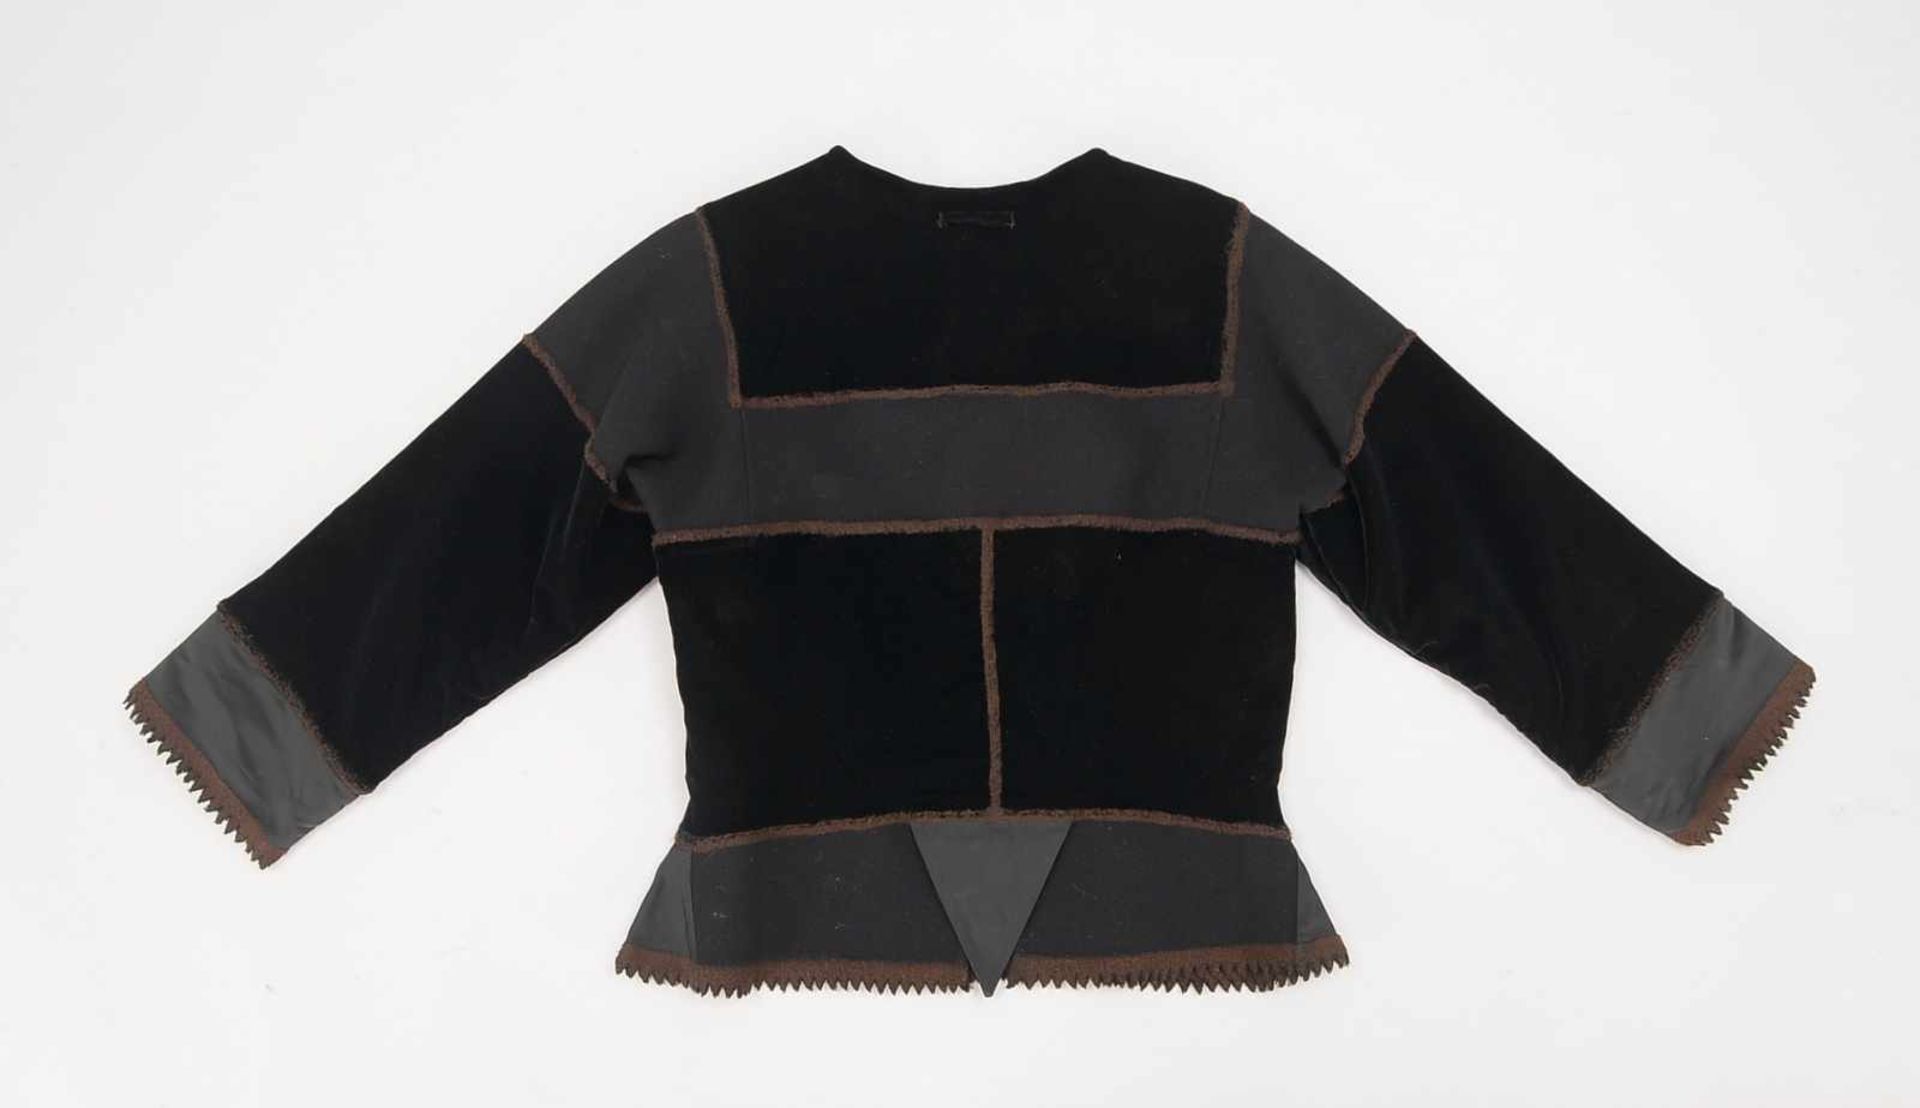 Jean Paul Gaultier, hochwertige Jacke (aufwendig gearbeitet), 88% Schurwolle, in gepflegtem Zustand; - Bild 2 aus 2